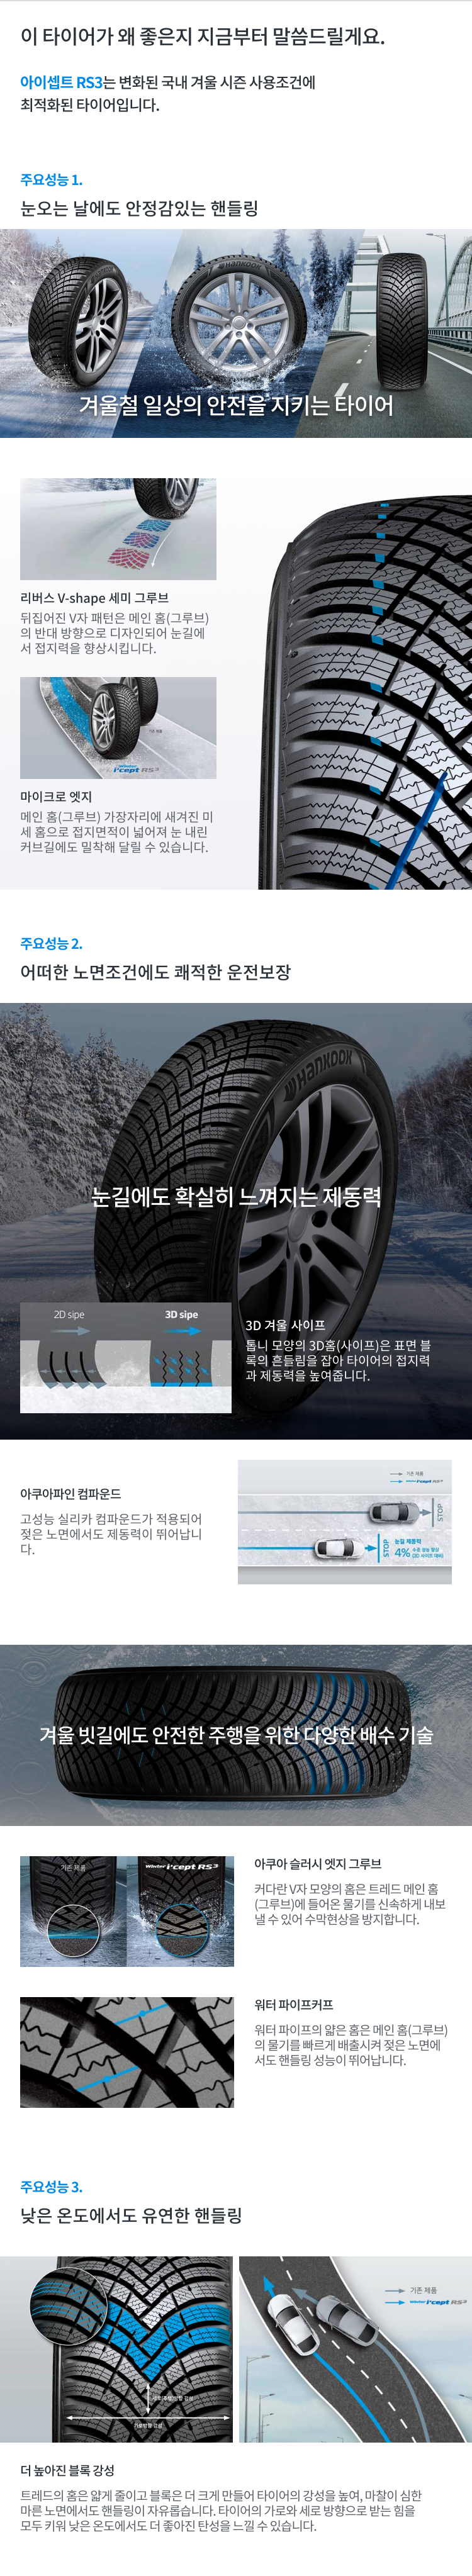 한국타이어 윈터 icept RS3 특장점